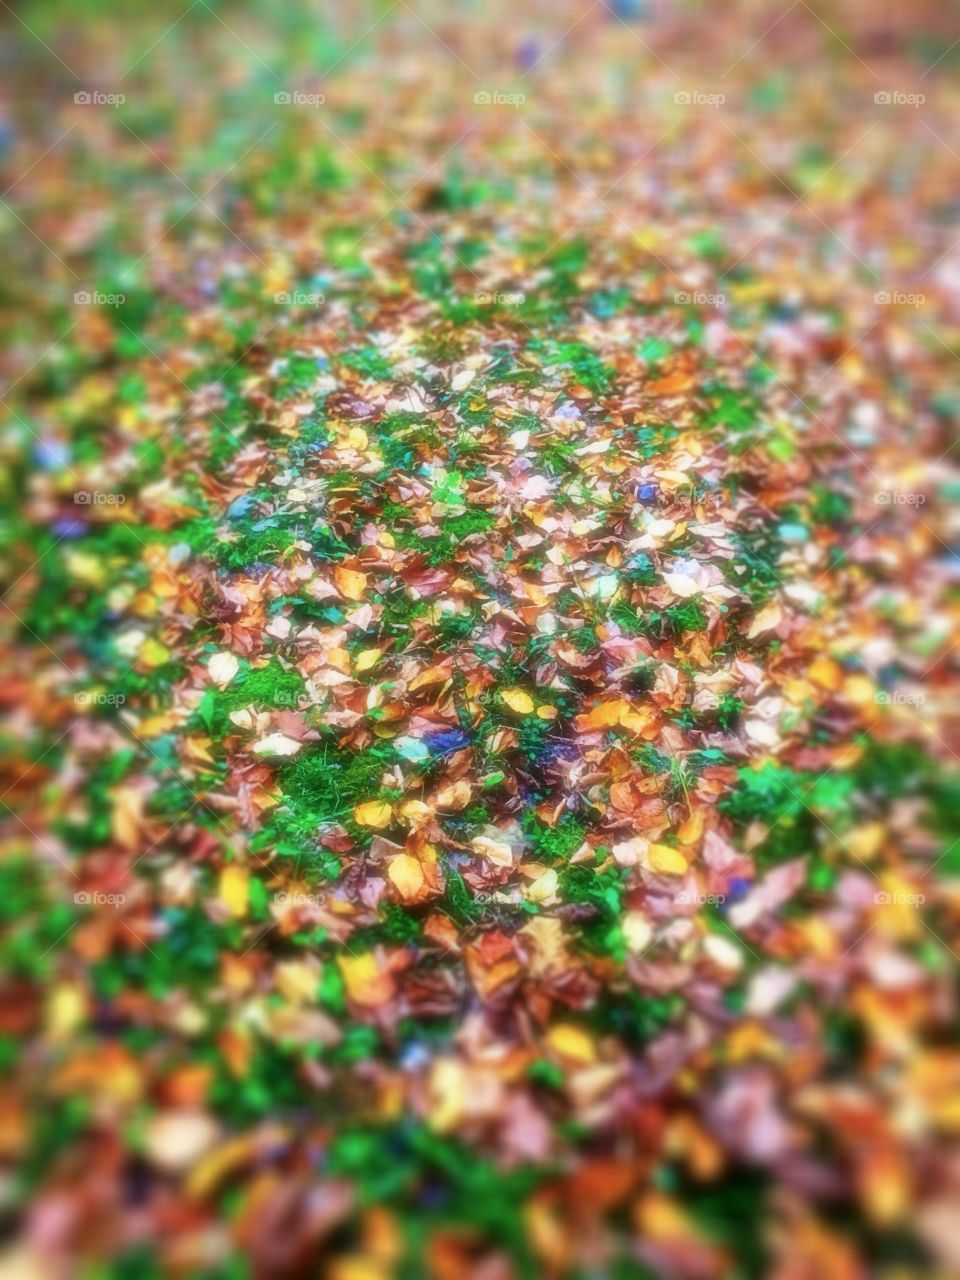 Fall leaves everywhere 